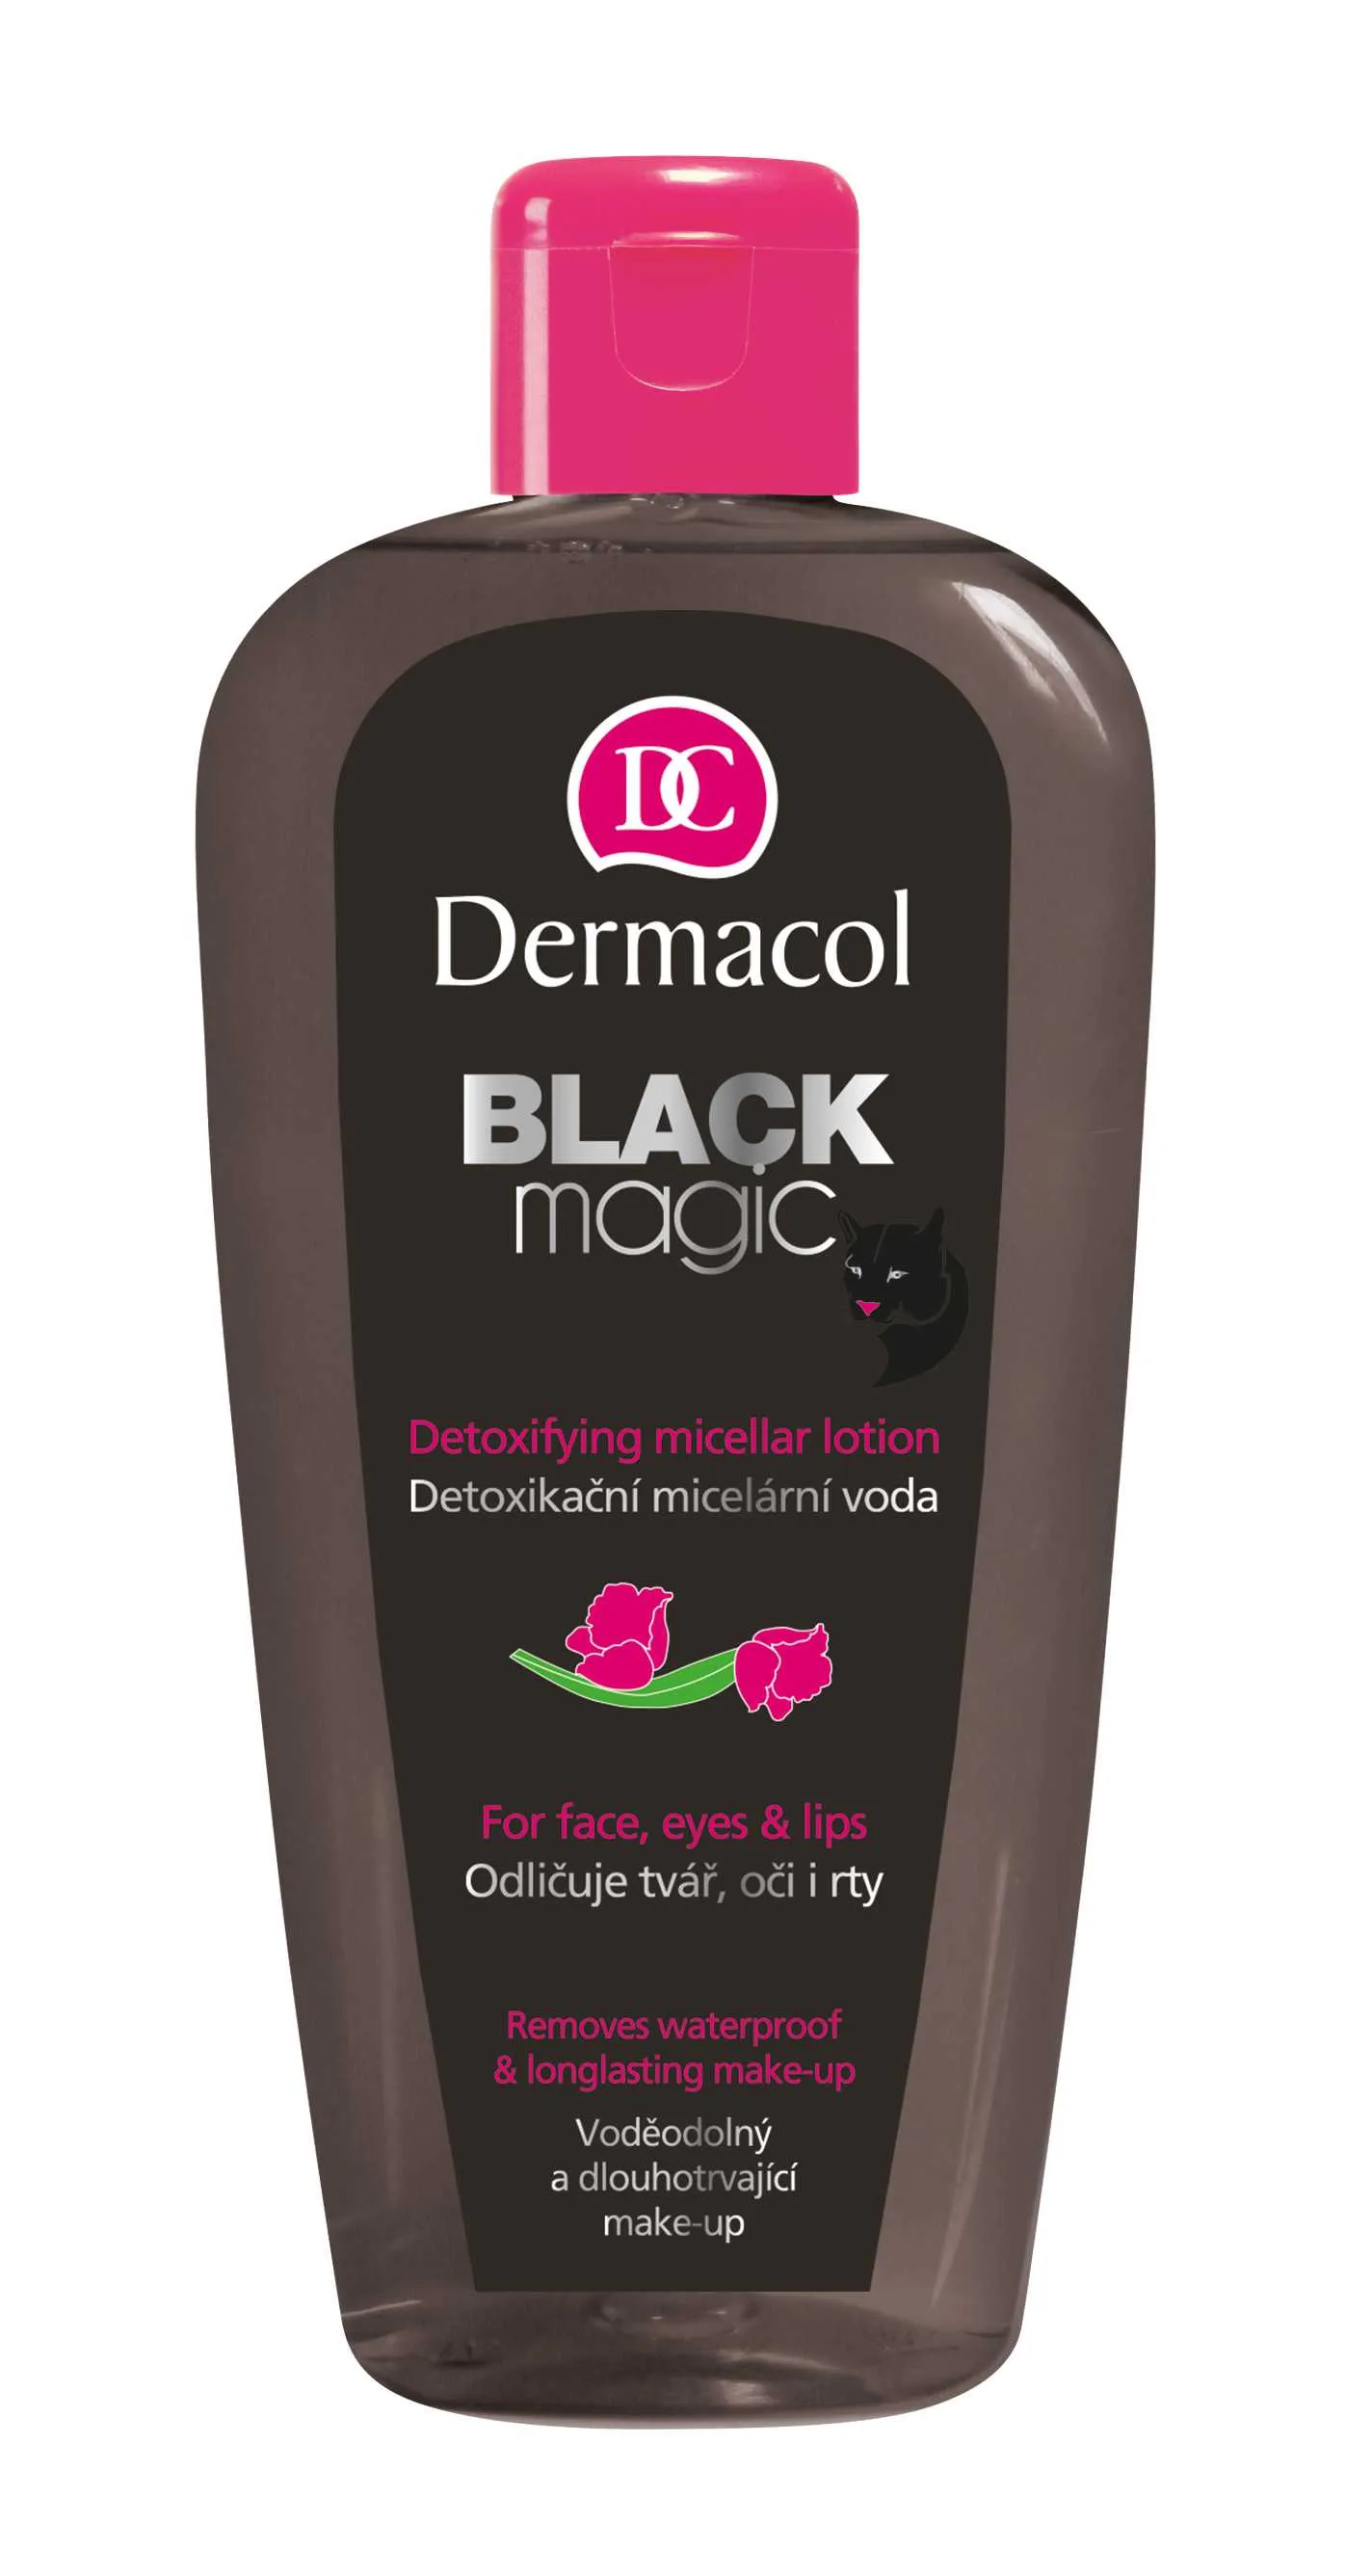 Dermacol Black magic detoxikačná micelárna voda